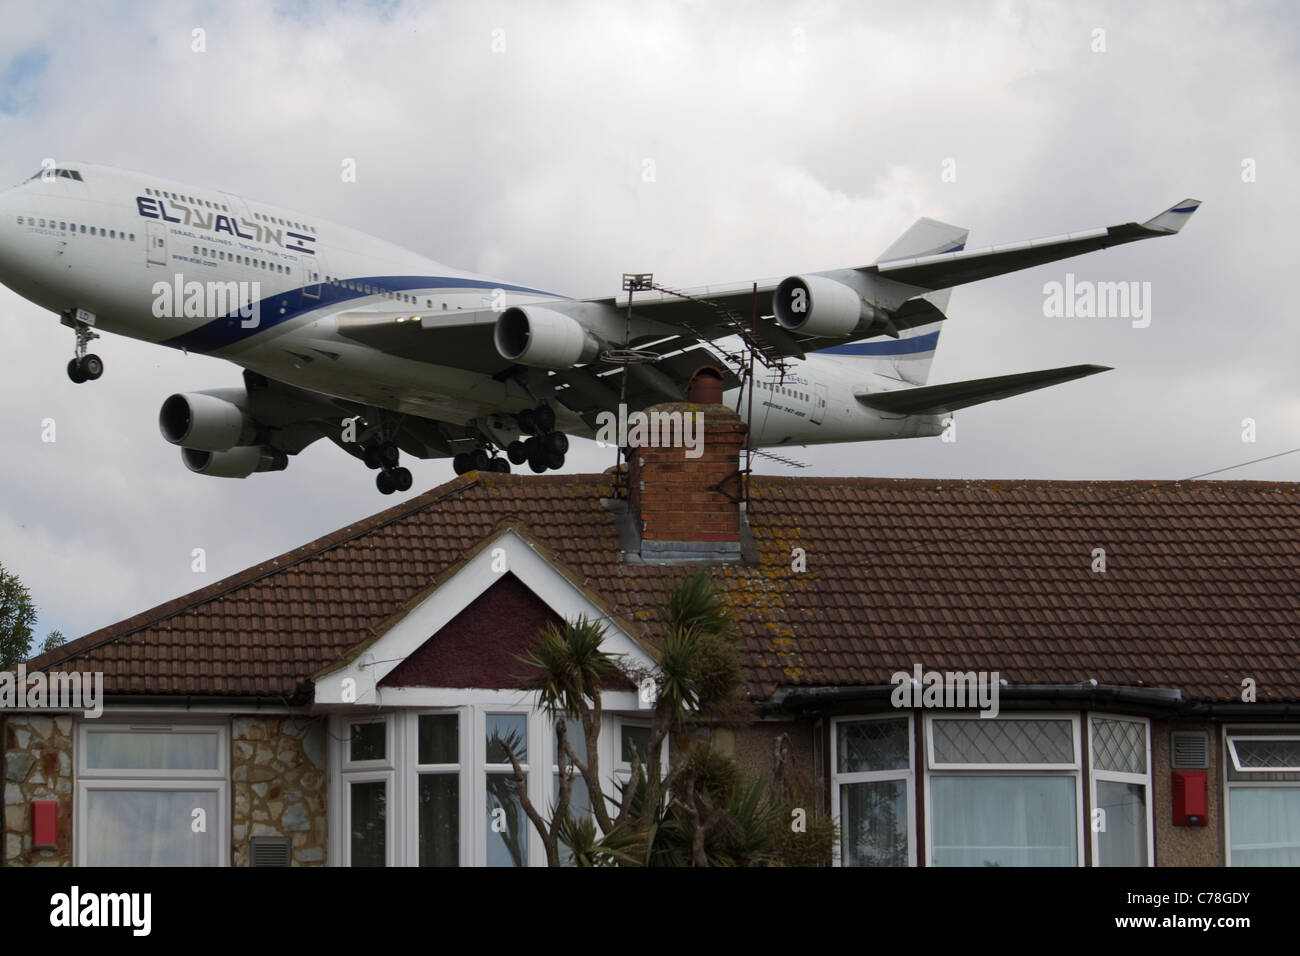 Split el al Israel Airlines Flugzeug niedrig fliegenden Flugzeug Heathrow Flughafen Ansatz Stockfoto